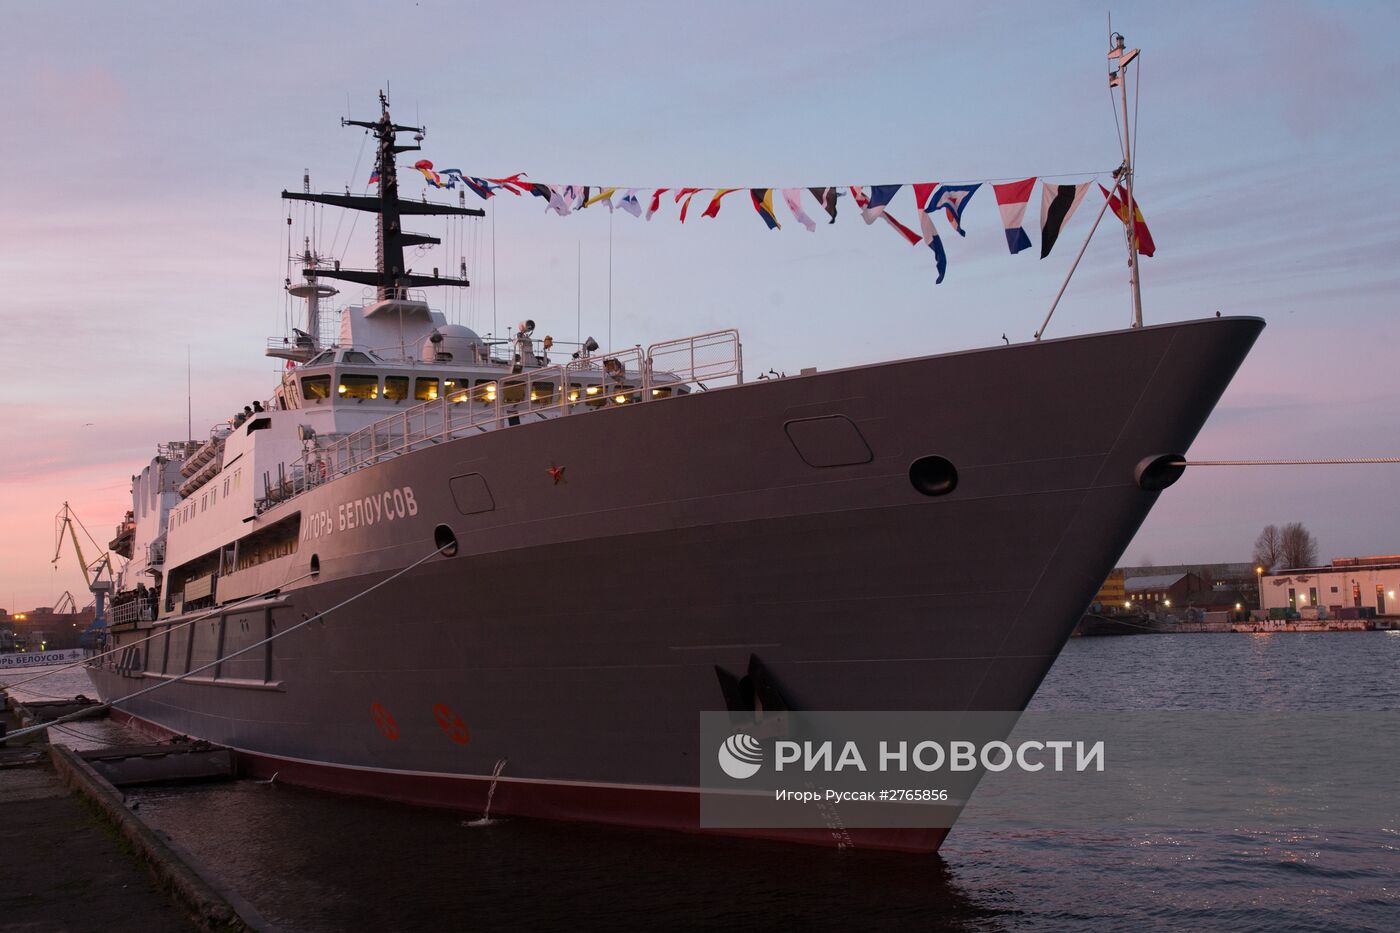 Церемония подъема флага на спасательном судне "Игорь Белоусов" в Санкт-Петербурге